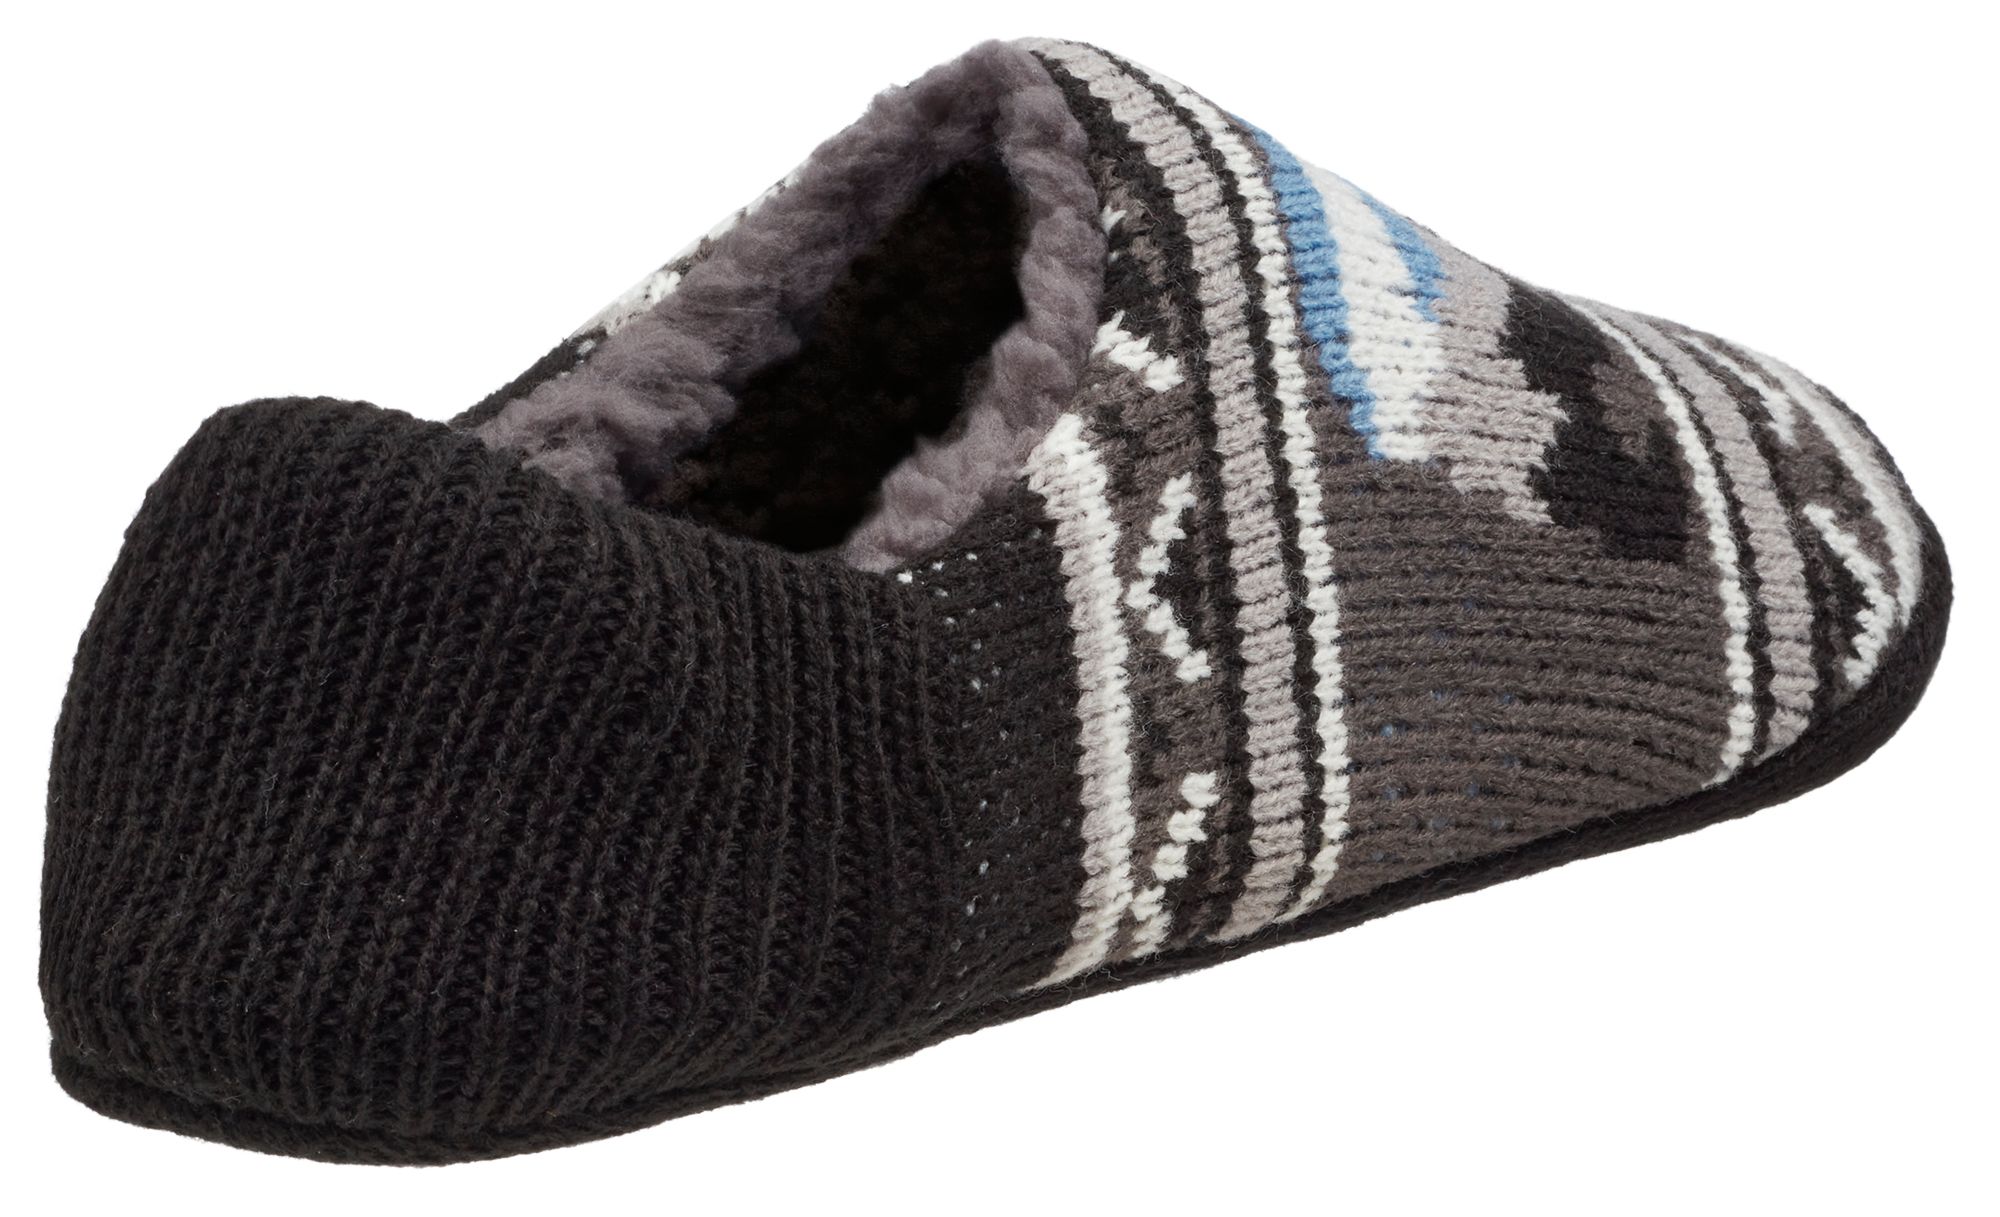 Northeast Outfitters Men's Cozy Cabin Bear Tech Slipper Socks